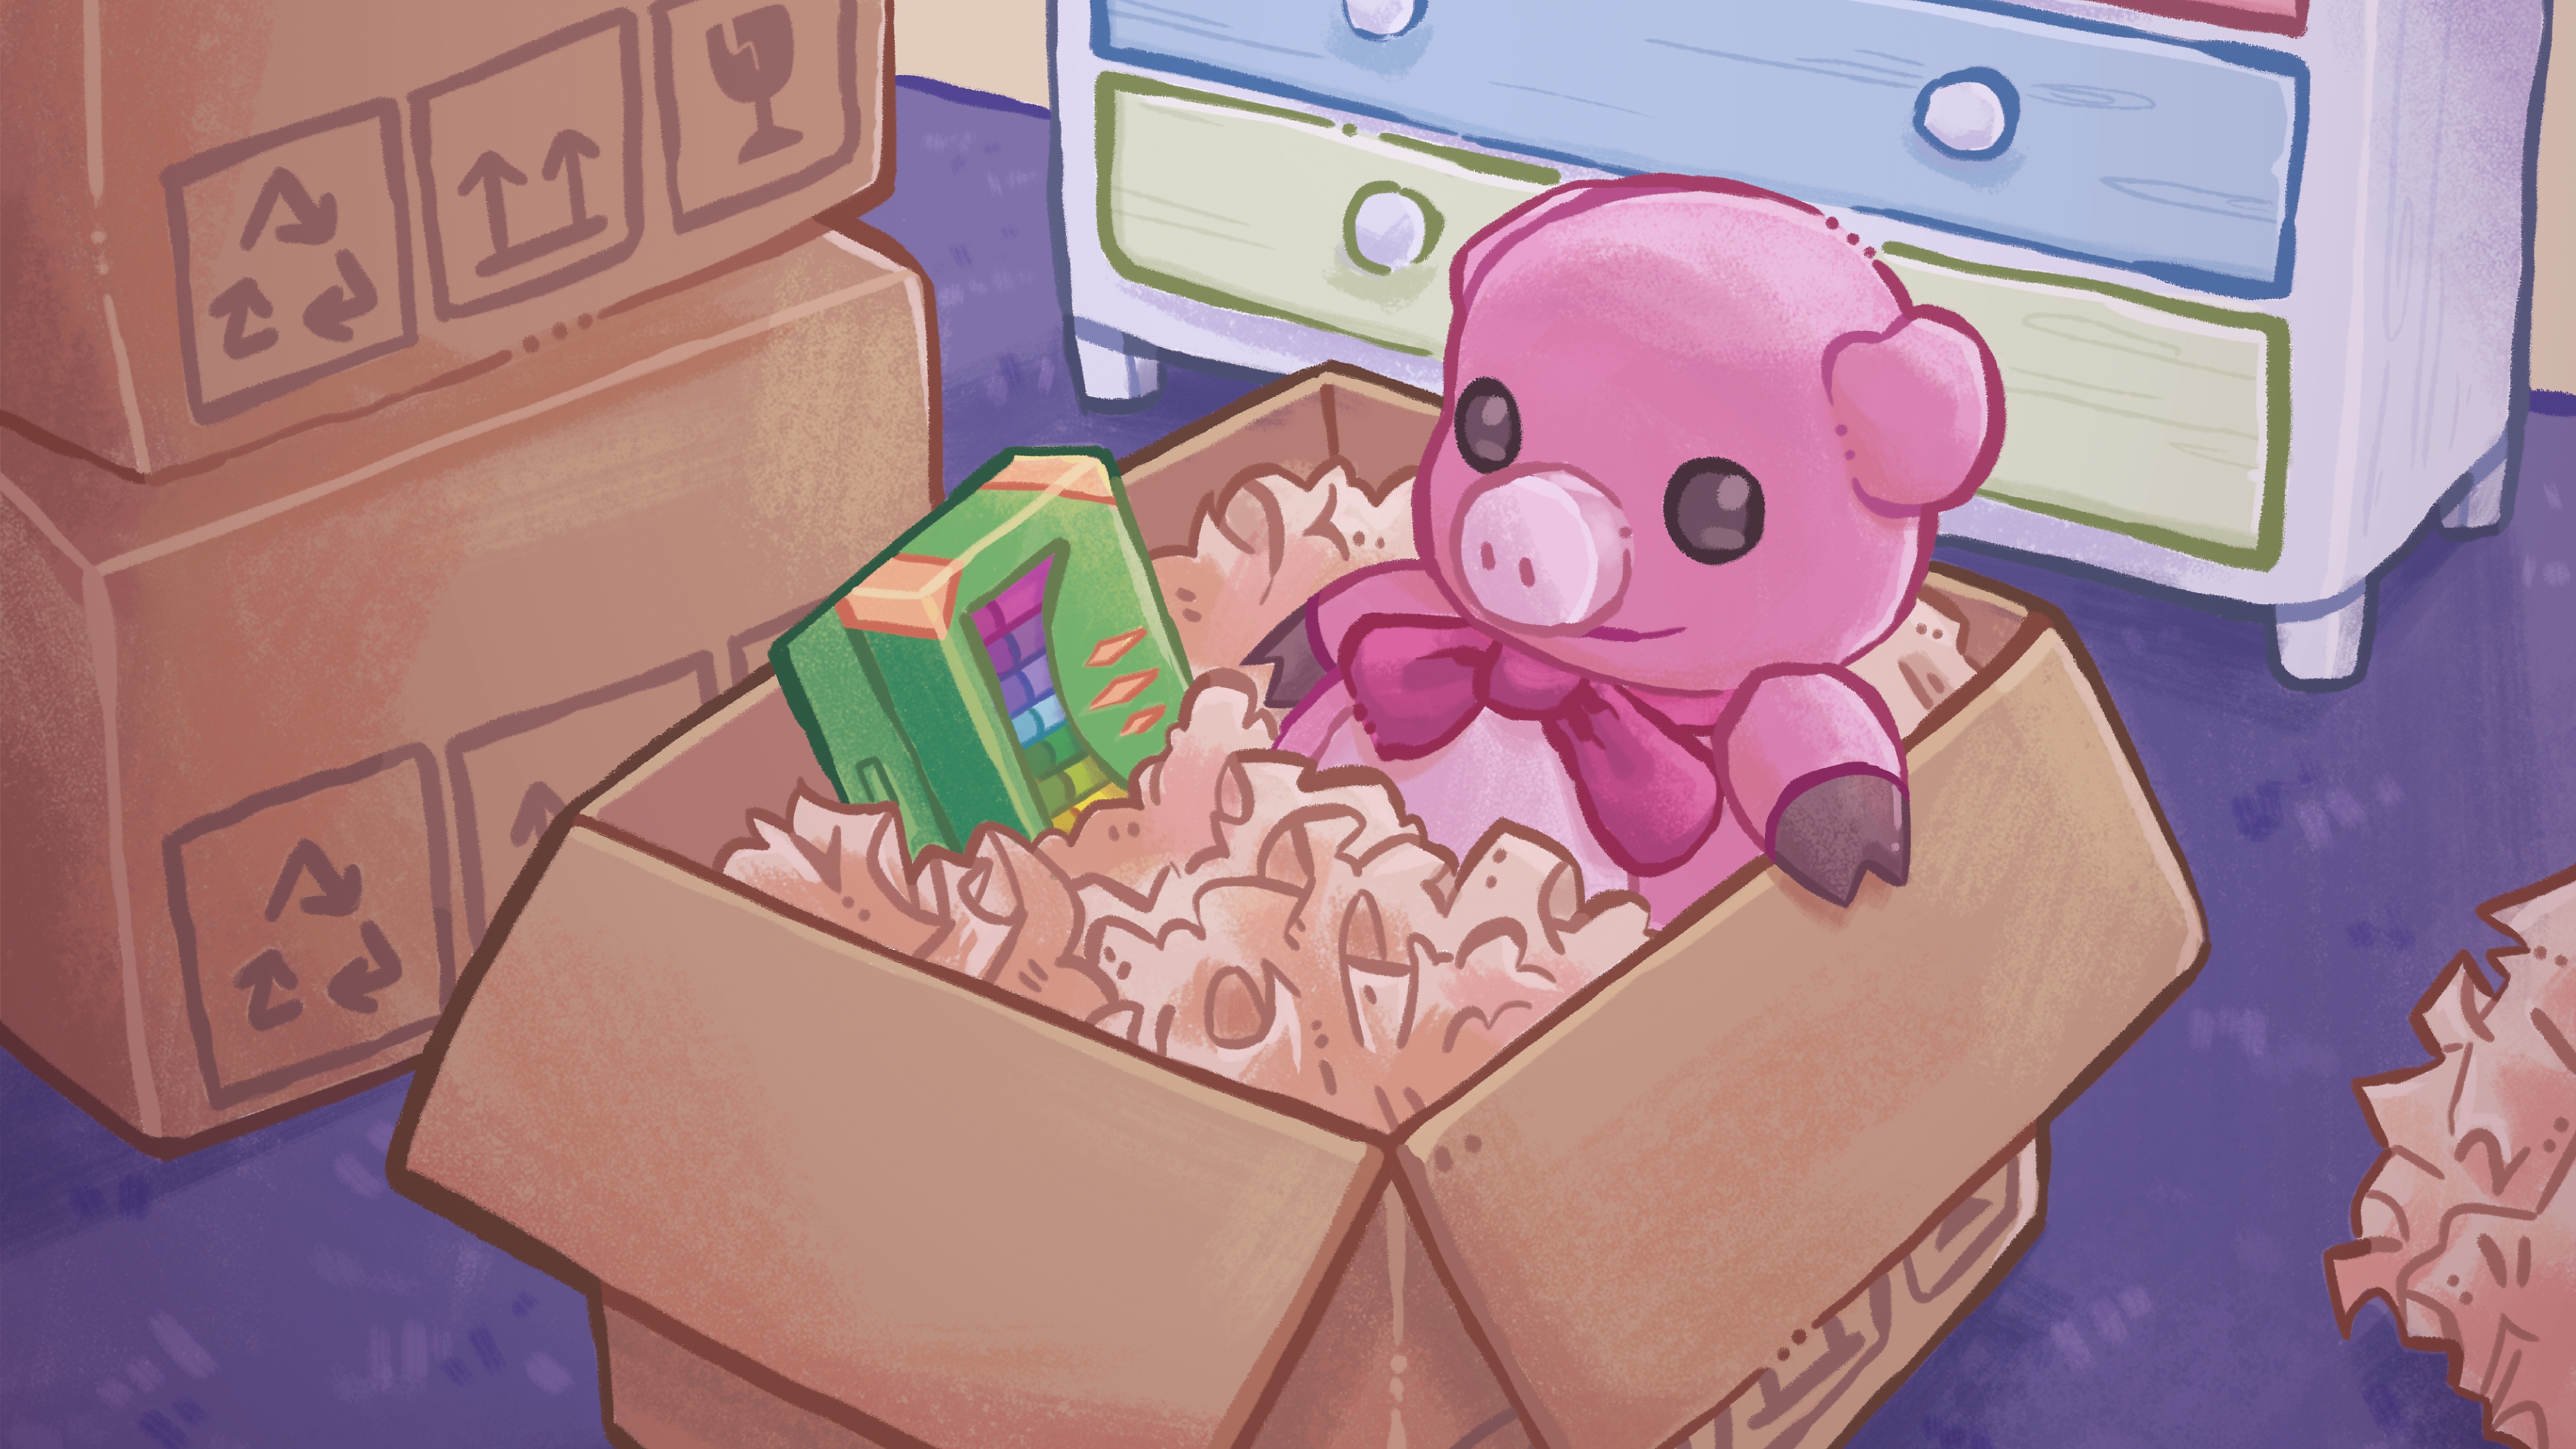 Immagine principale di Unpacking, che mostra il disegno fatto a mano di un orsetto colorato e una scatola di pastelli all'interno di uno scatolone.